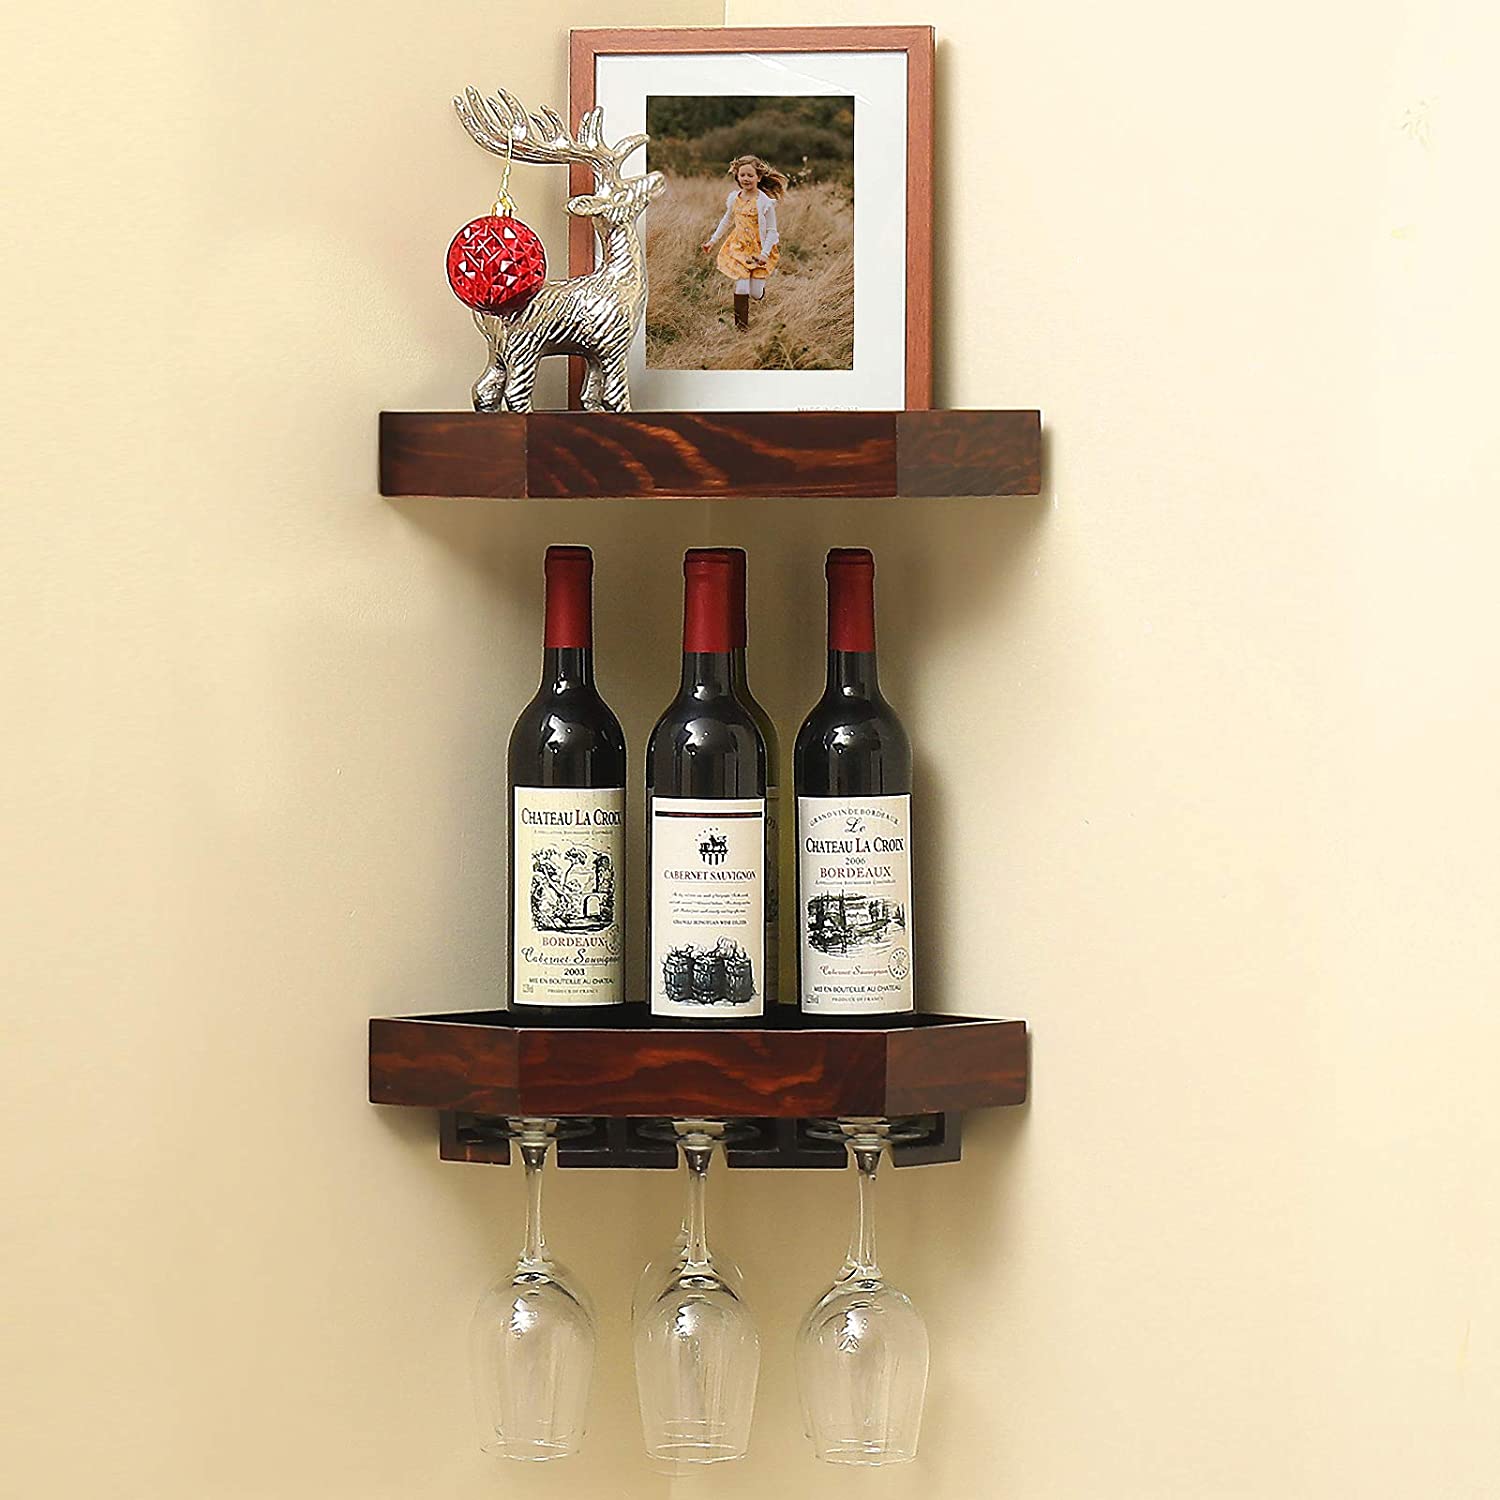 Floating Wine Glass Shelf